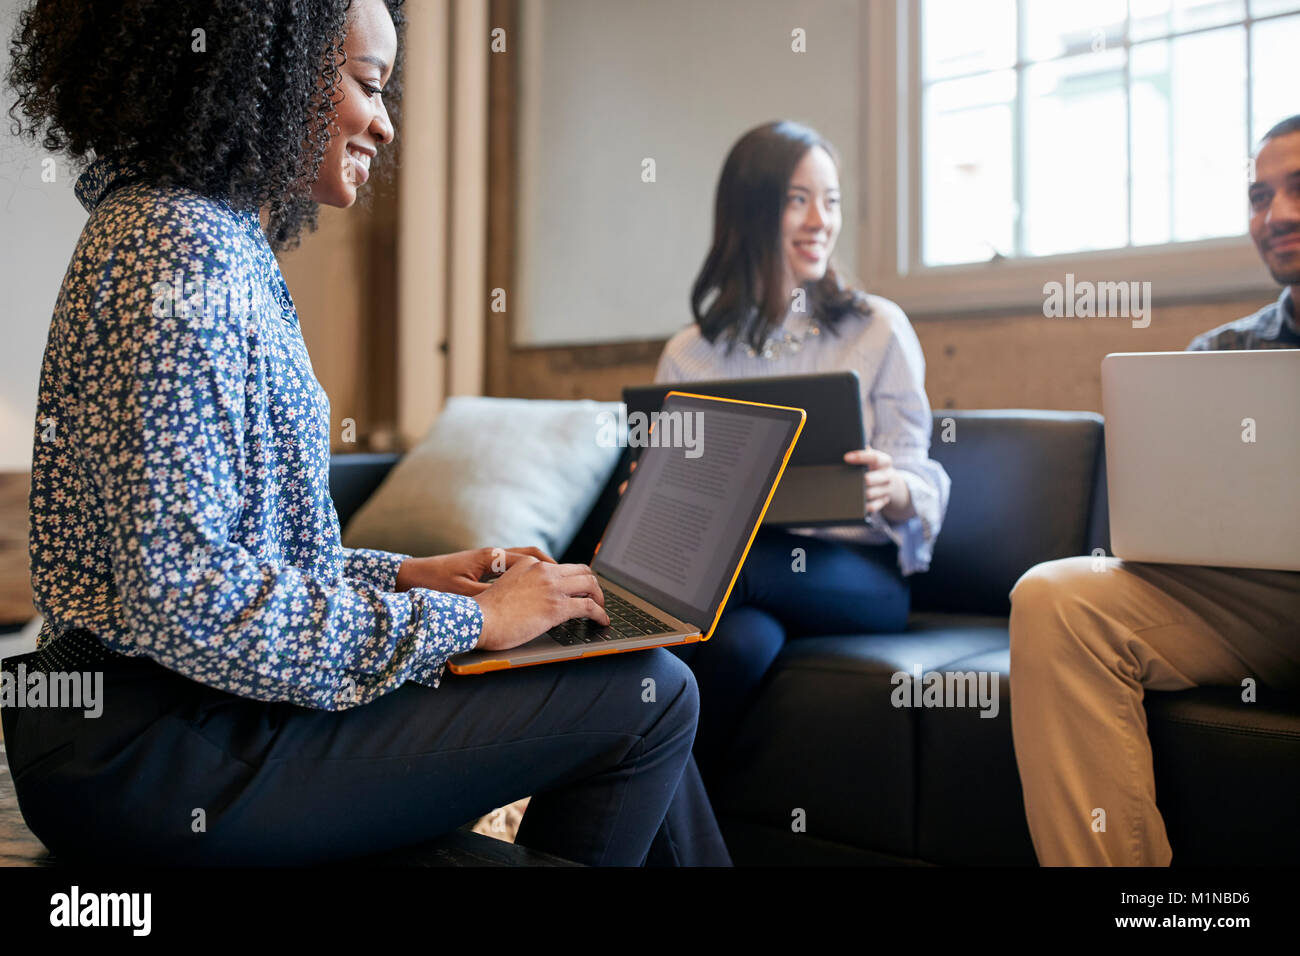 Lächelnd Kollegen zusammen arbeiten mit Laptops, Nahaufnahme Stockfoto